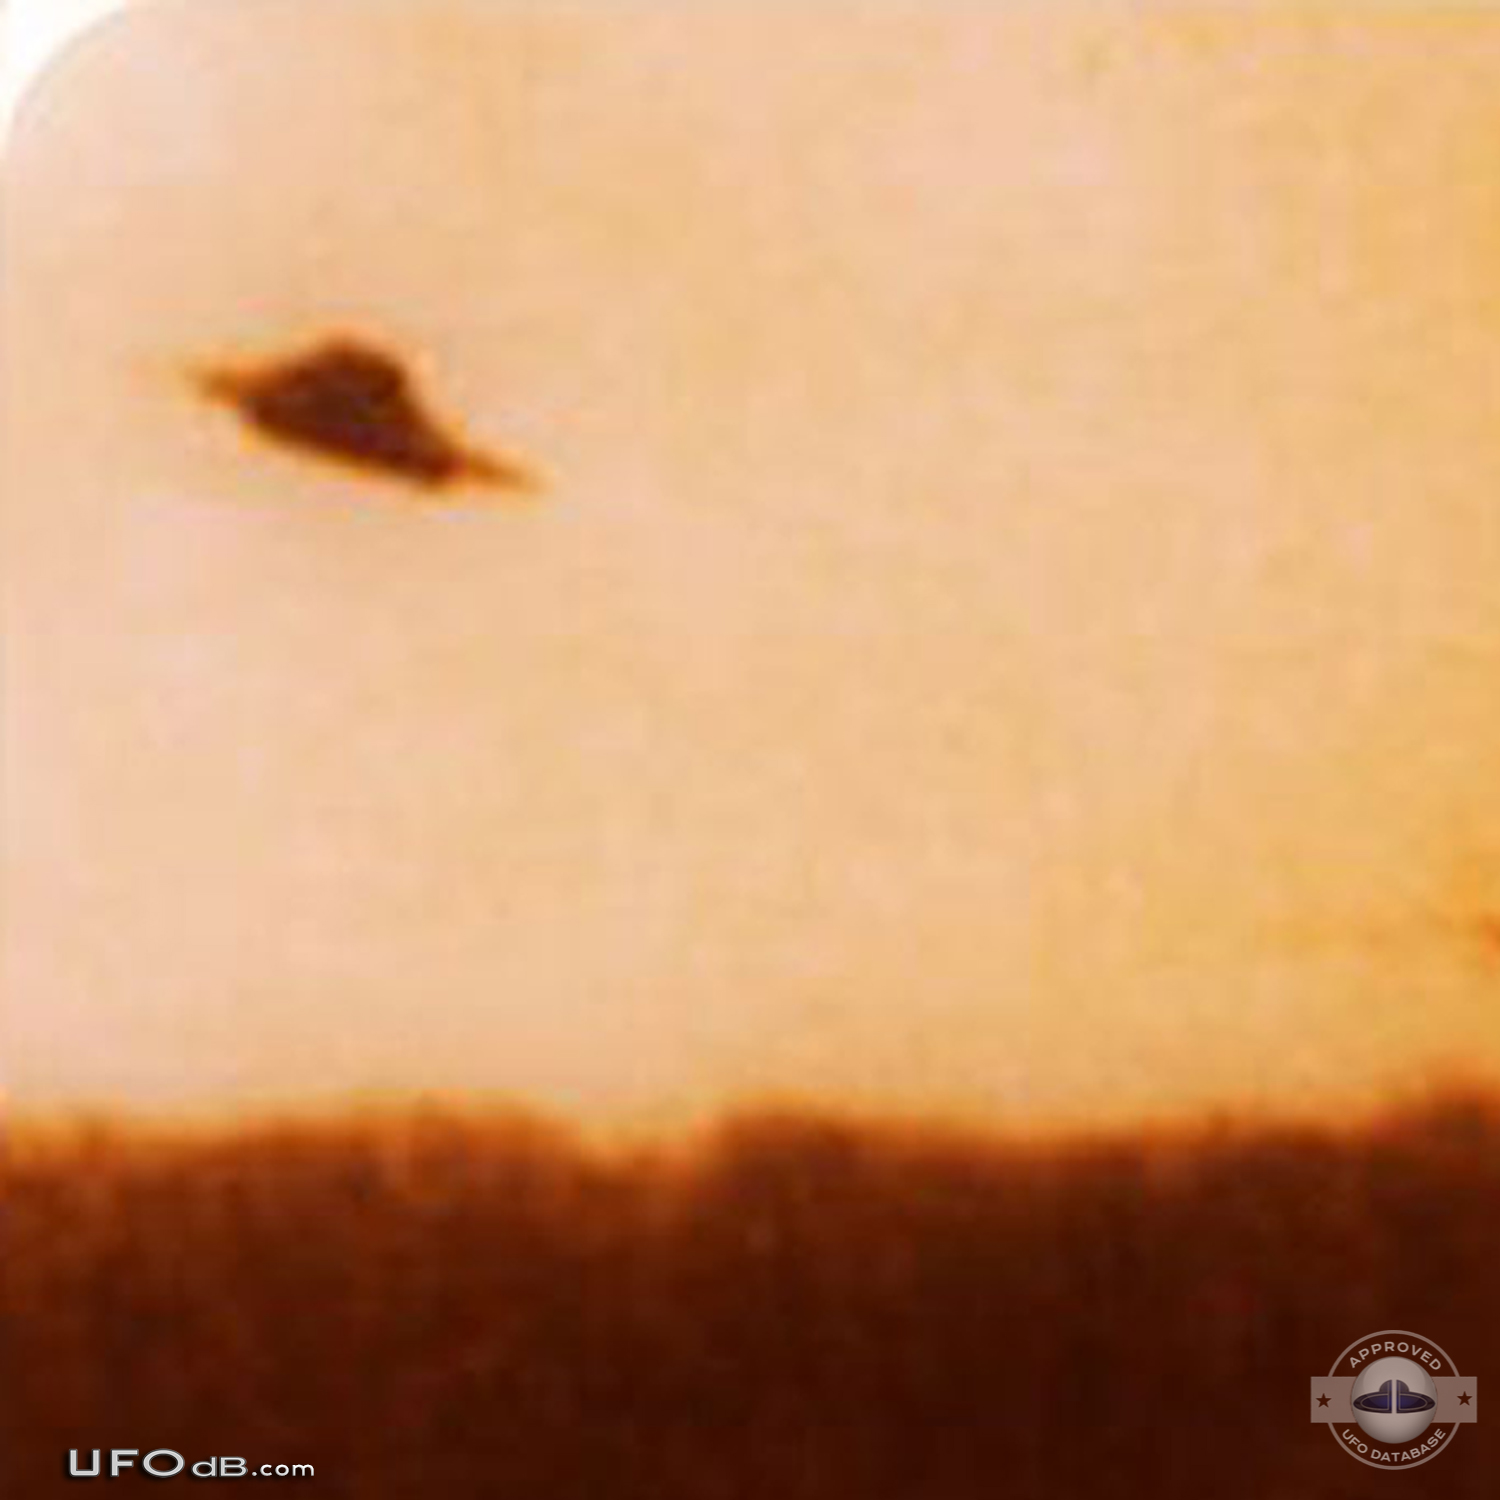 Old 1966 UFO picture taken near Lake Tiorati, Orange County New York UFO Picture #633-4